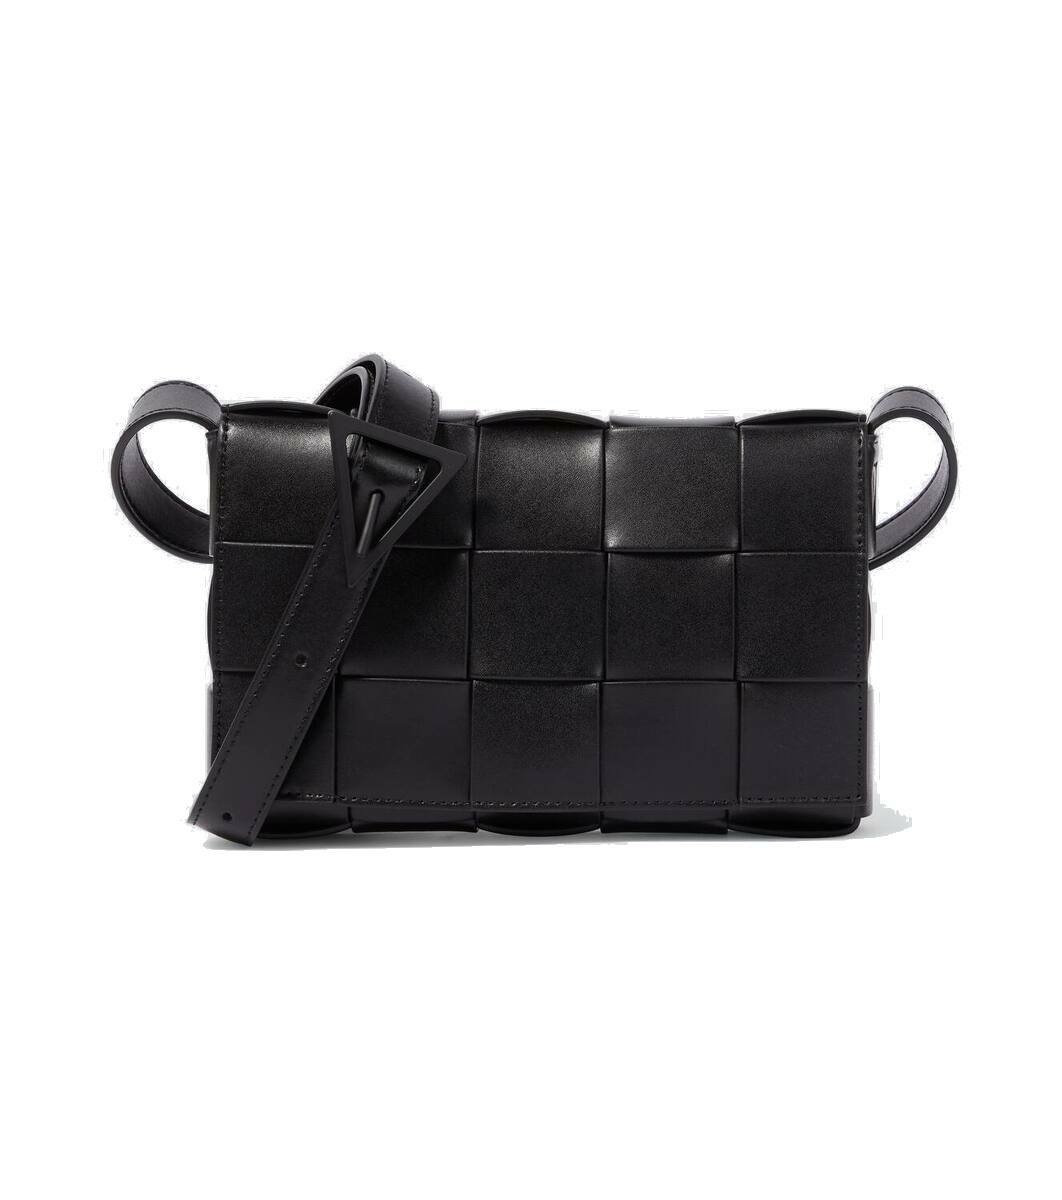 Photo: Bottega Veneta Cassette Small leather crossbody bag